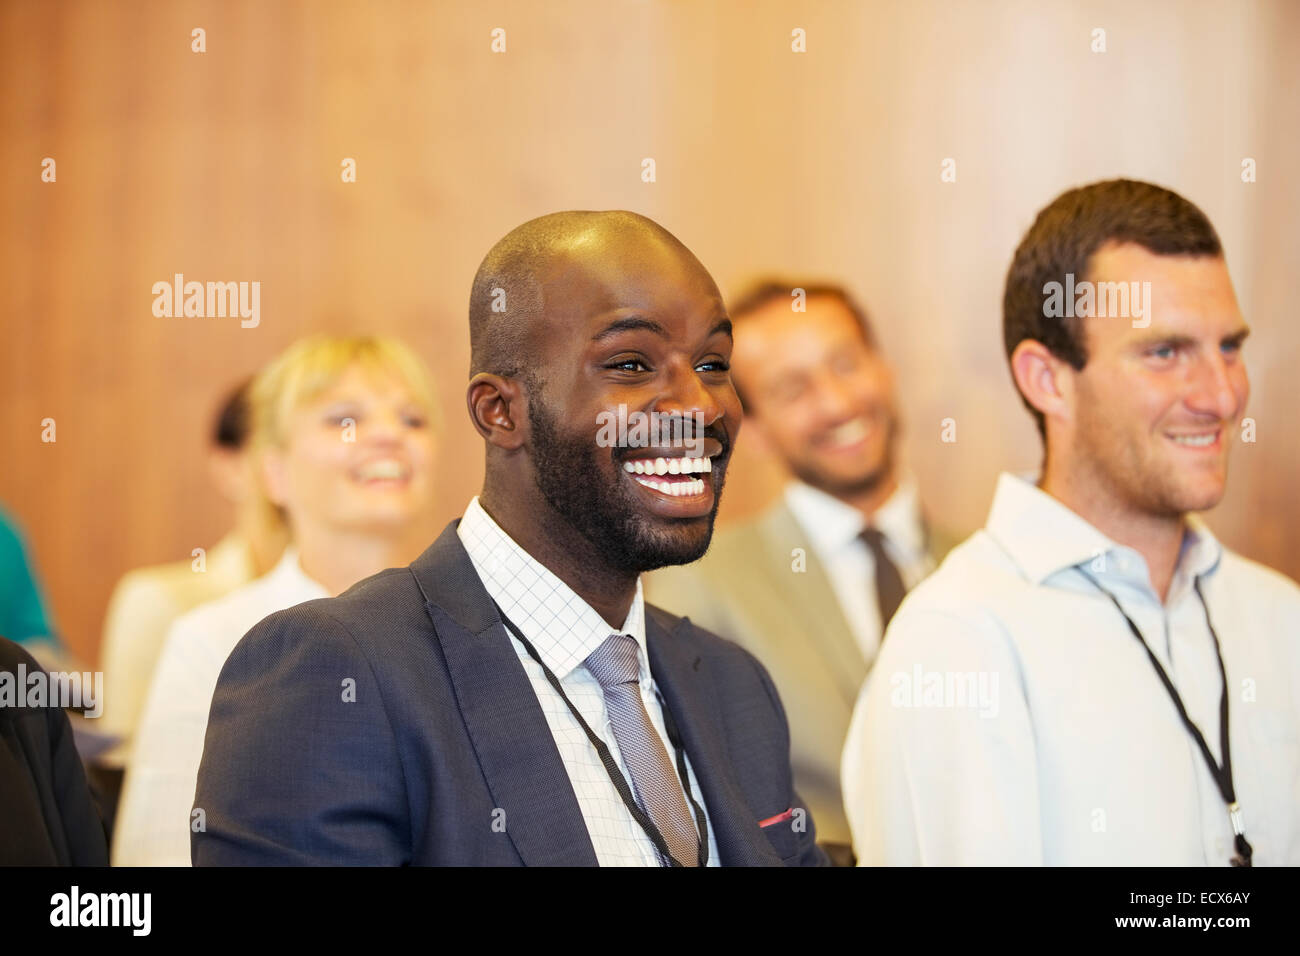 Portrait de deux jeunes hommes, un rire, assis dans la salle de conférence Banque D'Images